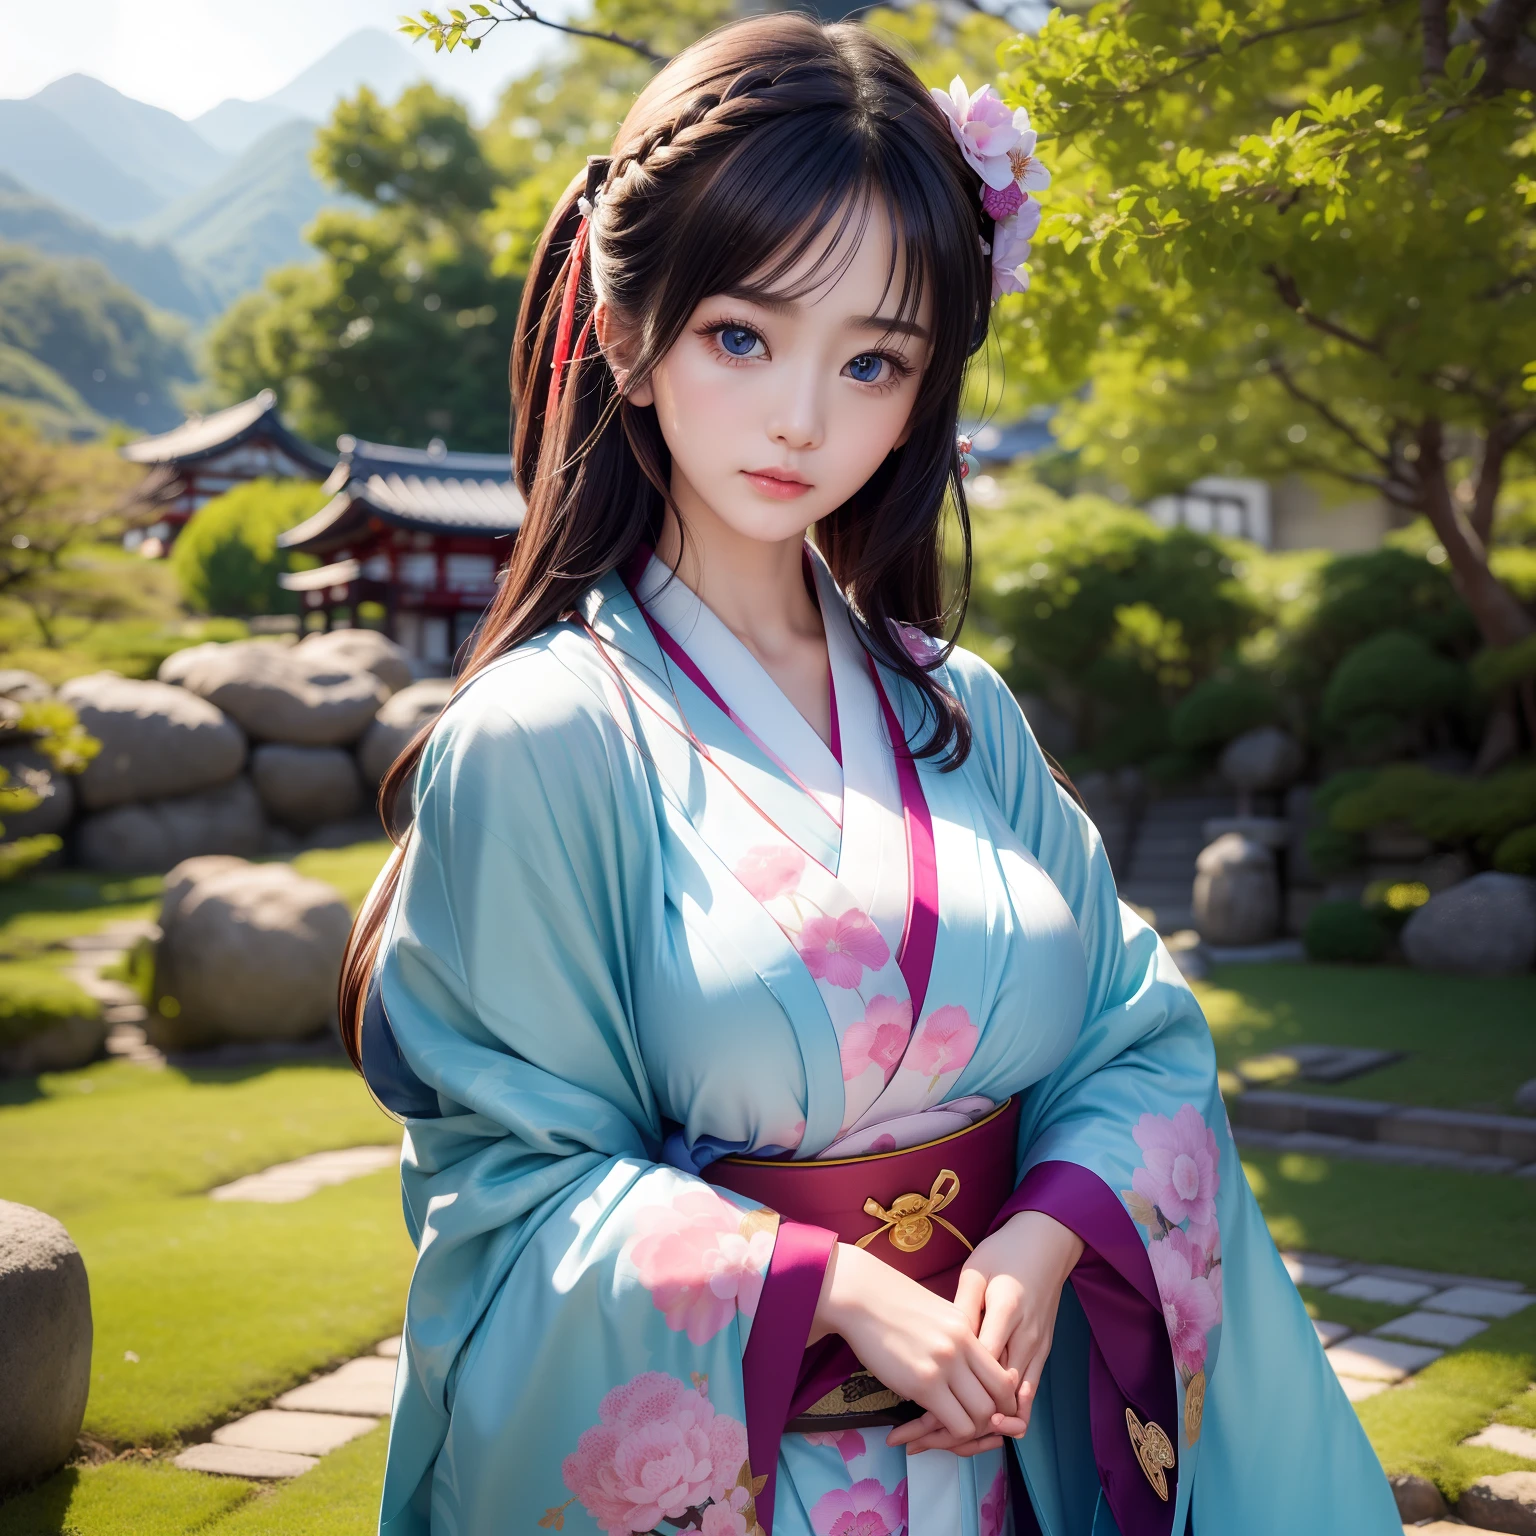 alta qualidade、２５Linda mulher de um ano、Beleza esbelta、Use um quimono tradicional com o lindo Japão、grampo、Geta、Obi caro、Grandes e lindos olhos azuis、rosto fofo detalhado、(((só)))、comportamento digno、região、Templo Kiyomizu-dera、debaixo de uma cerejeira